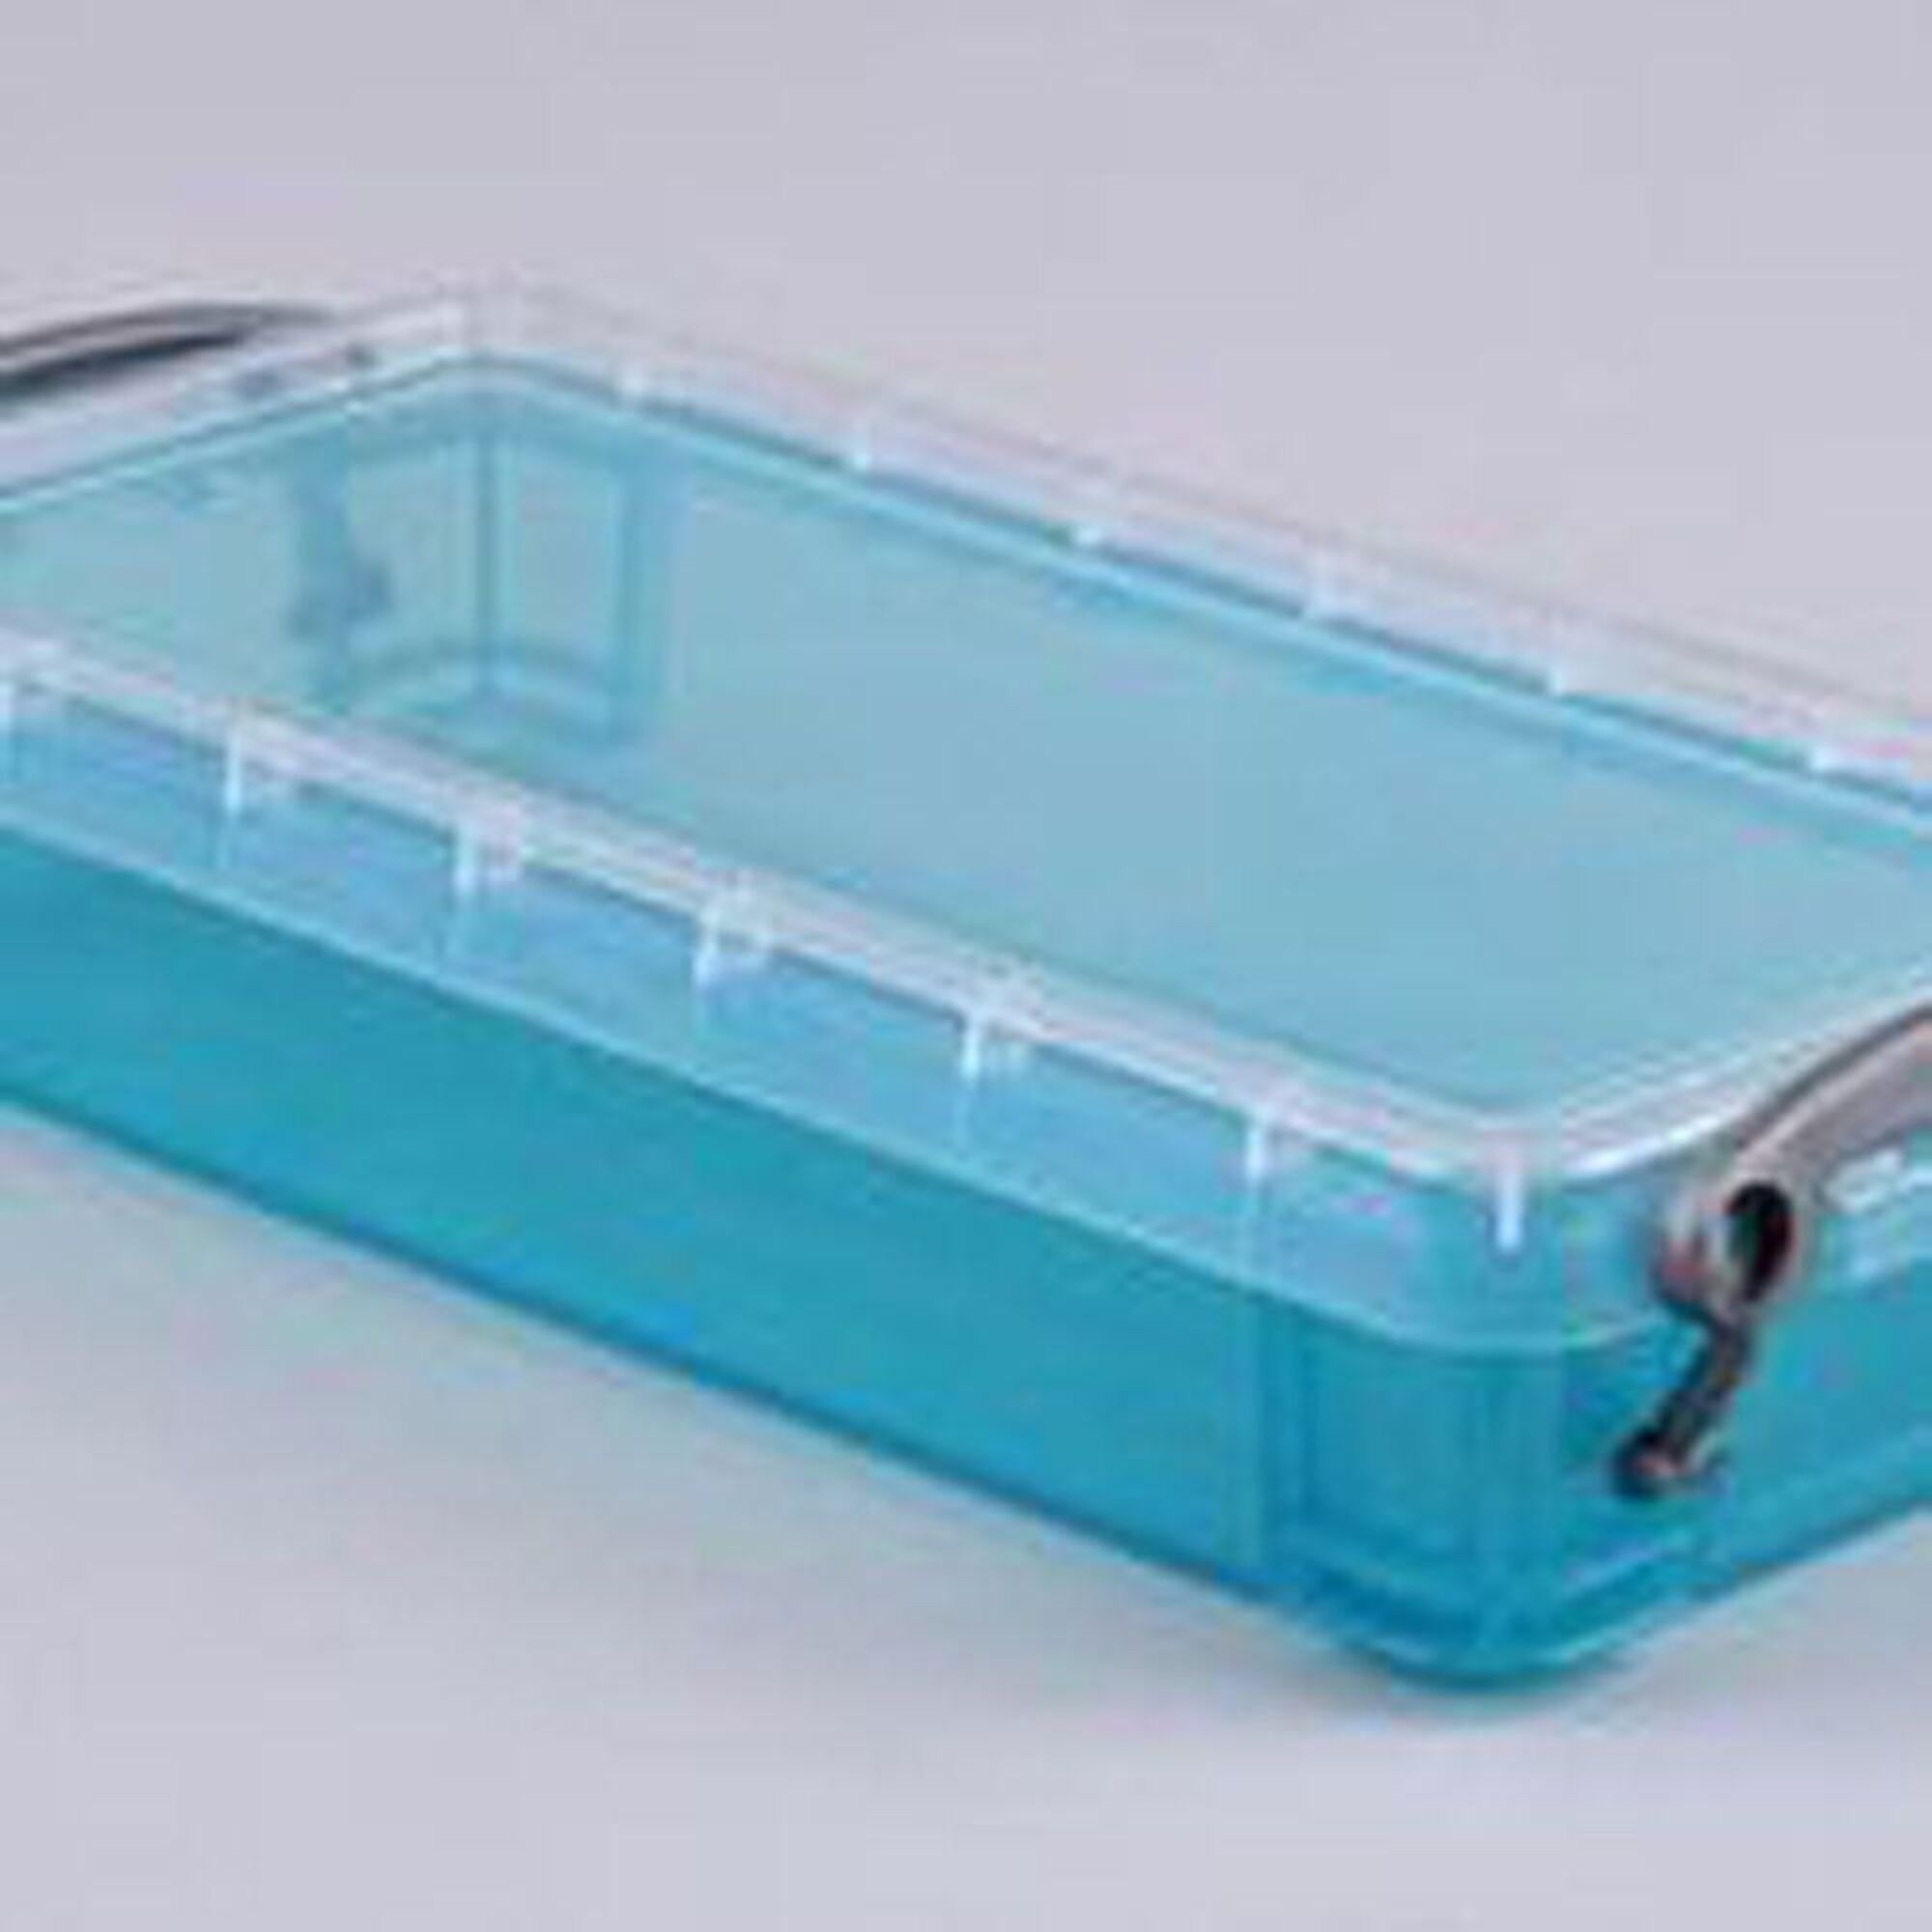 Really Useful Box Caixa de Arrumação, A4, 4 L, Polipropileno, com